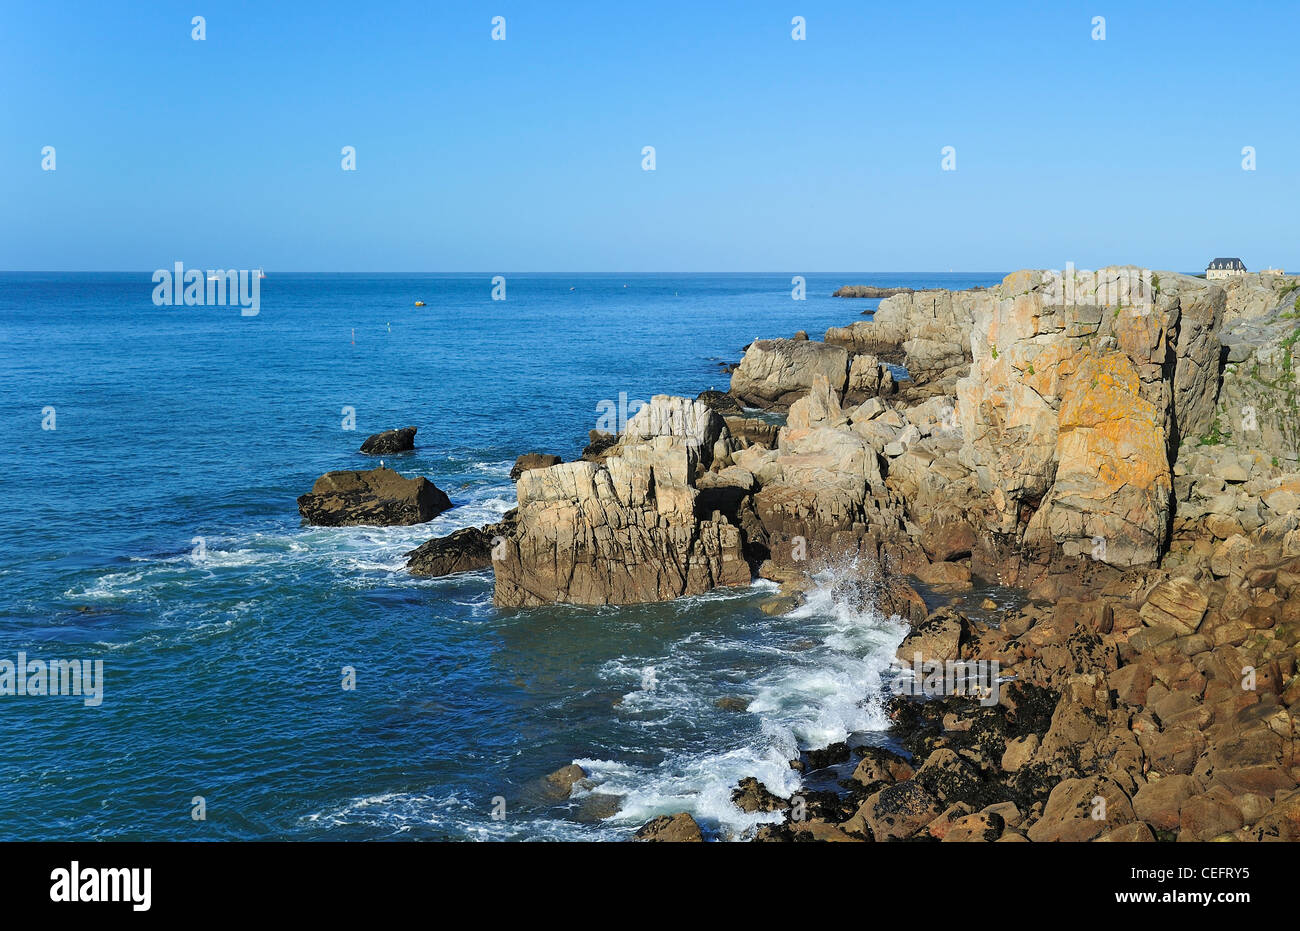 Sea cliff along rocky coastline of the Côte sauvage near Le Croisic, Loire-Atlantique, Pays-de-la-Loire, France Stock Photo